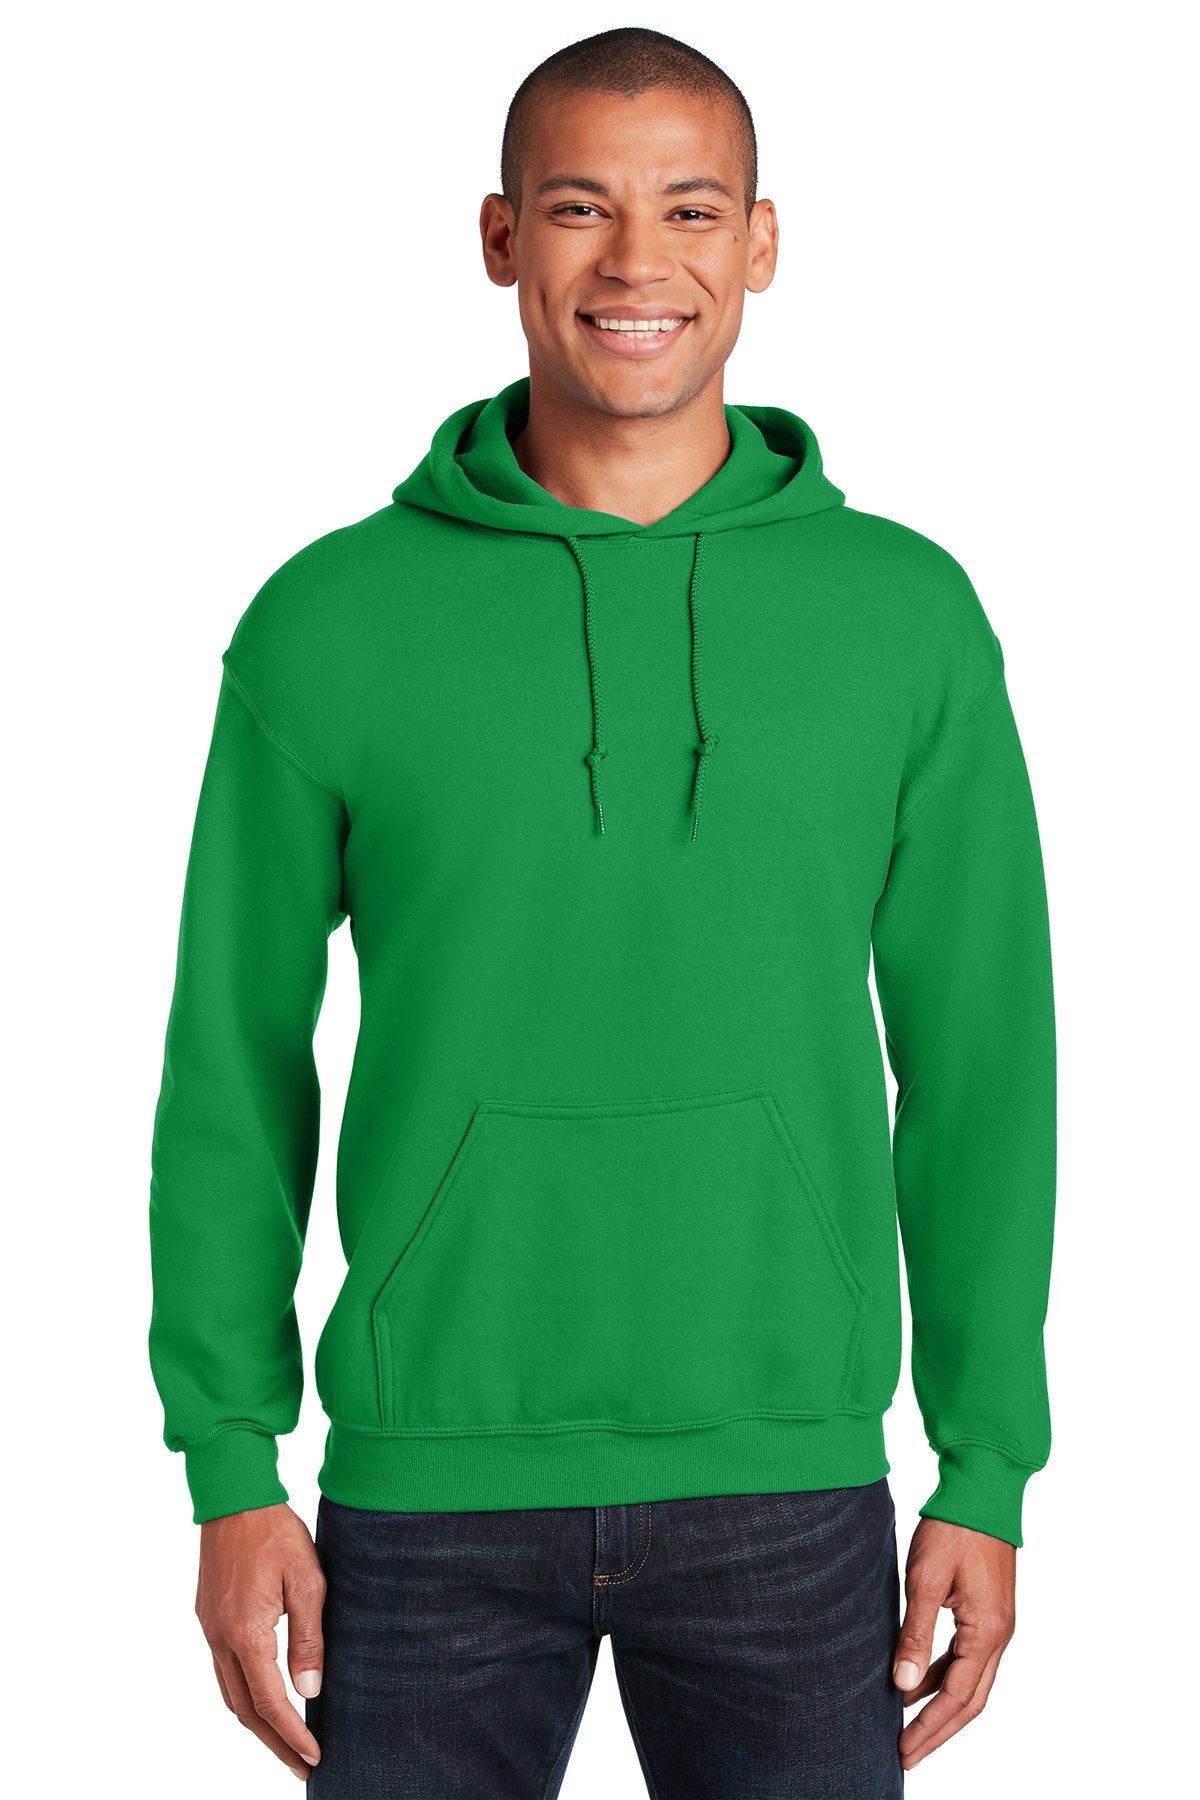 Gildan Irish Green 18500 custom design sweatshirts